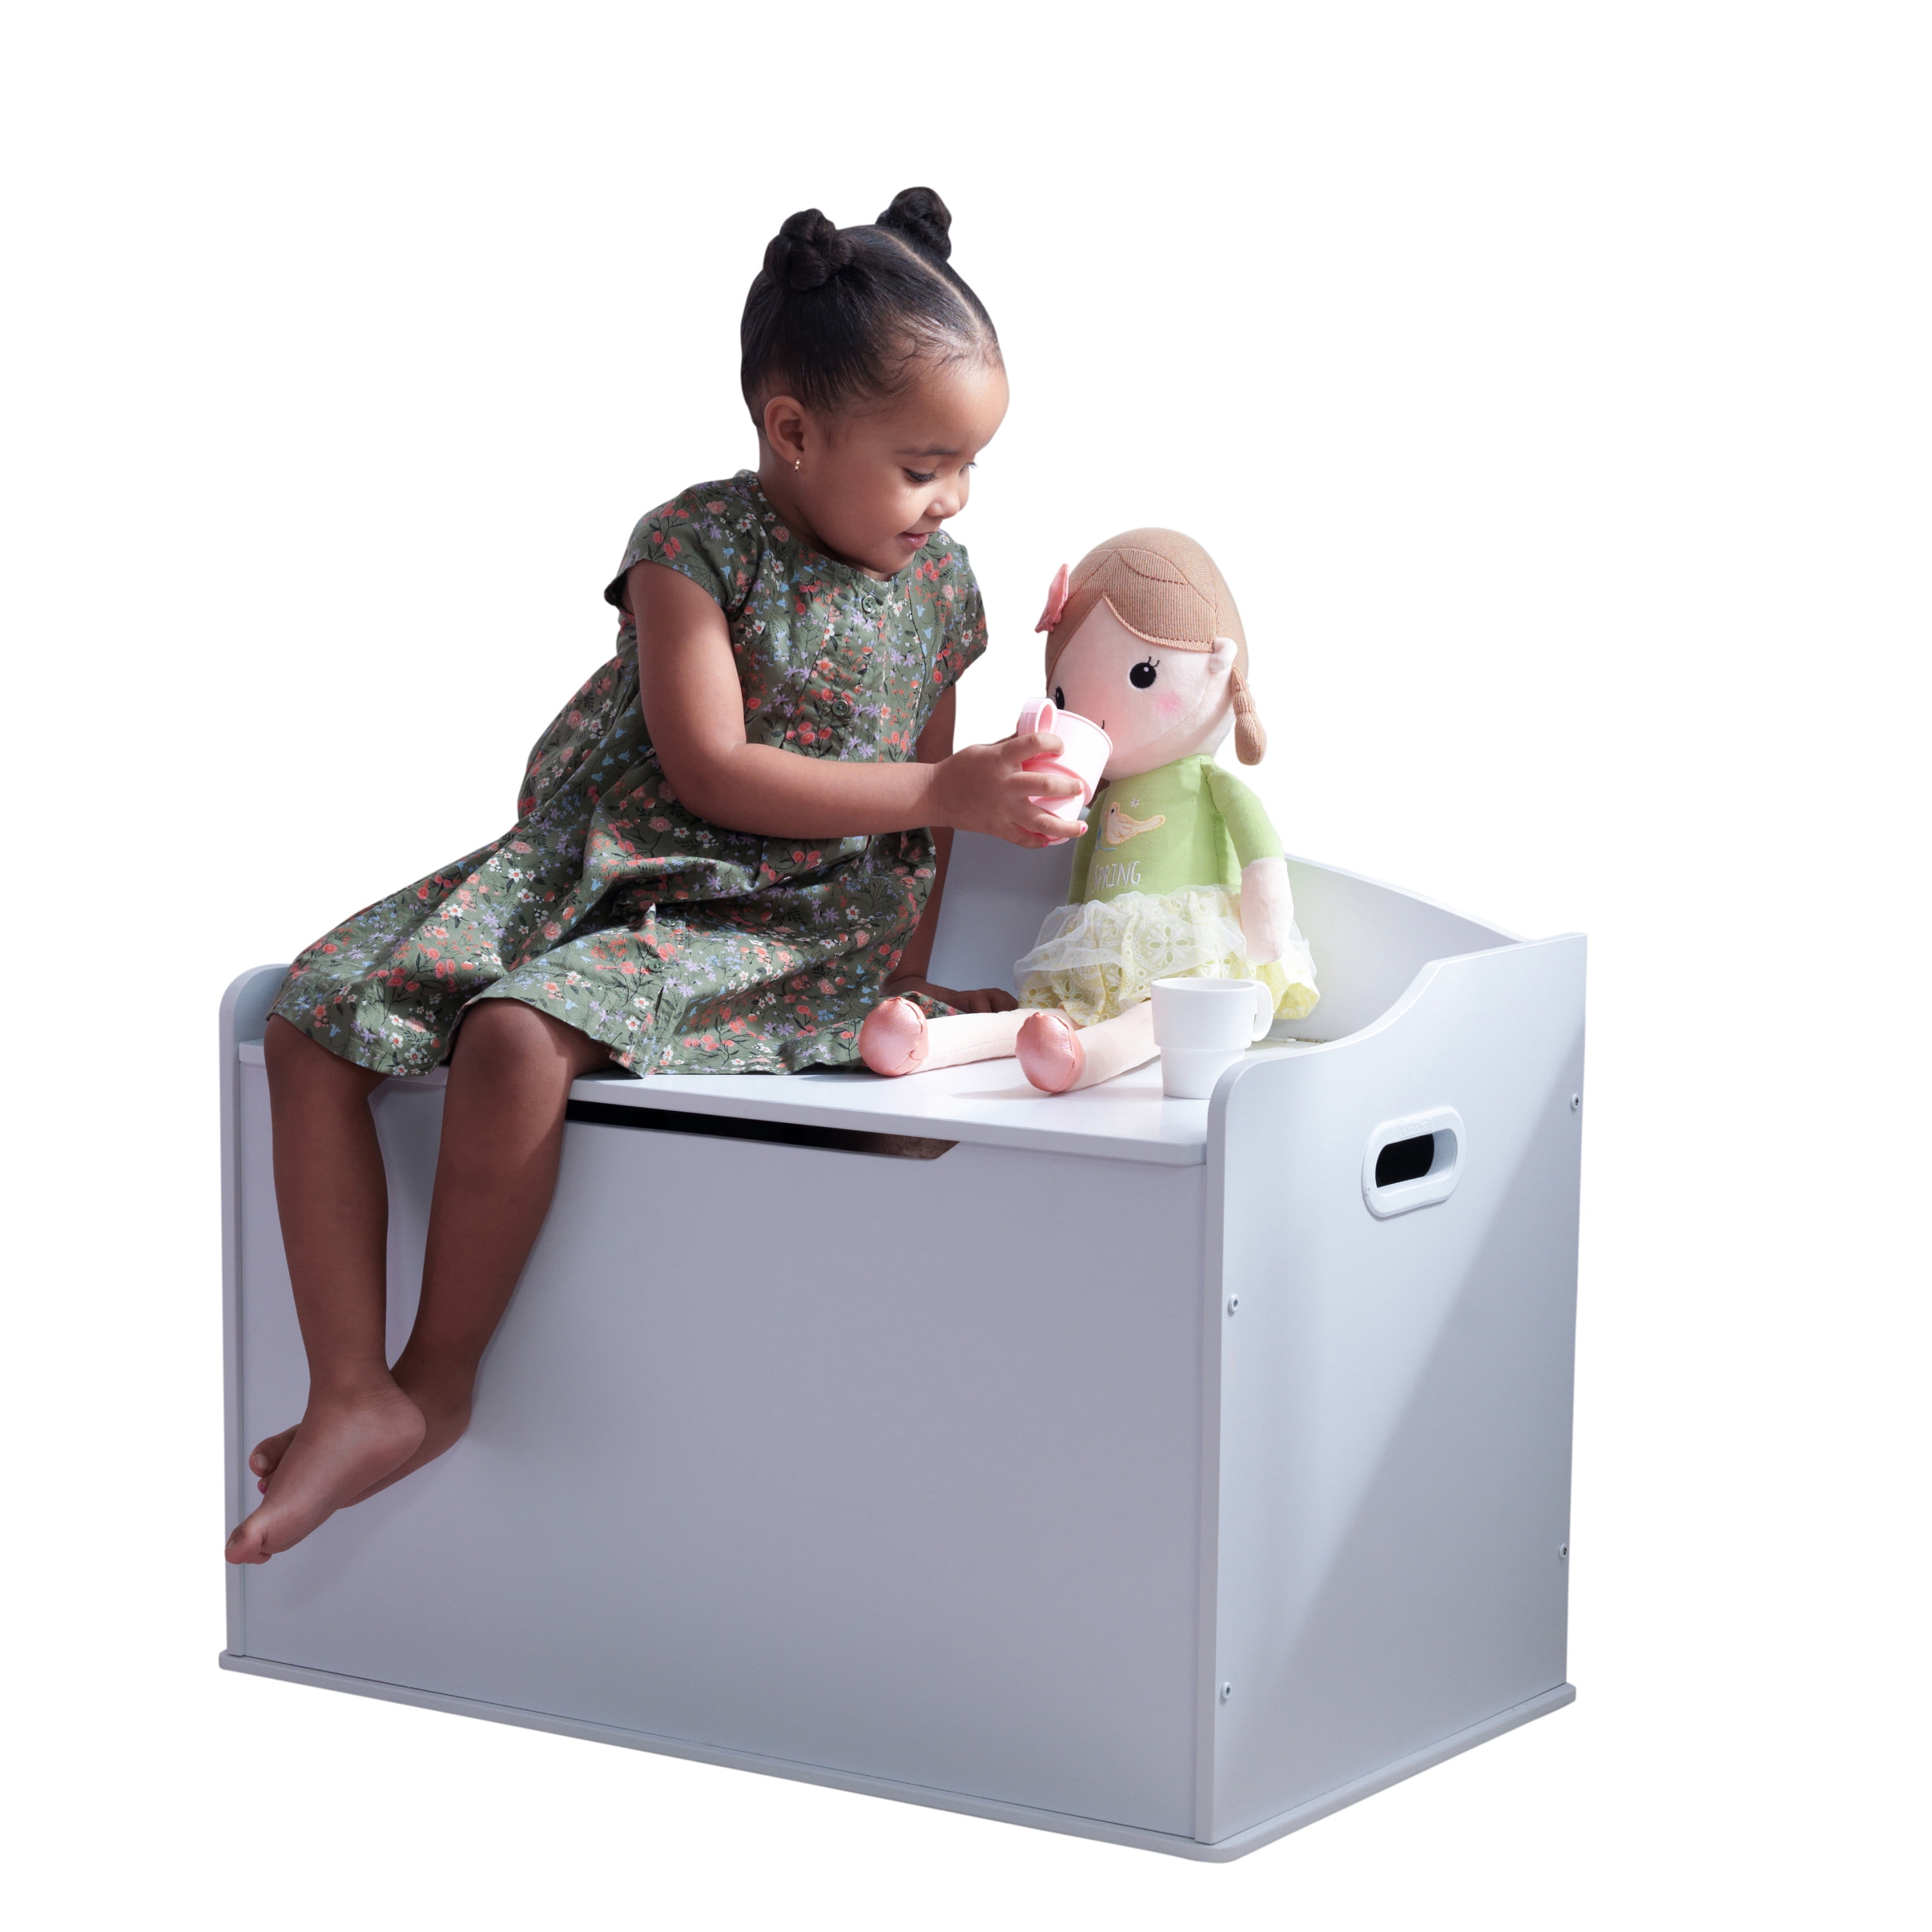 KidKraft Austin Wooden Toy Organizer Storage Chest Box and Sitting Bench Cherry 